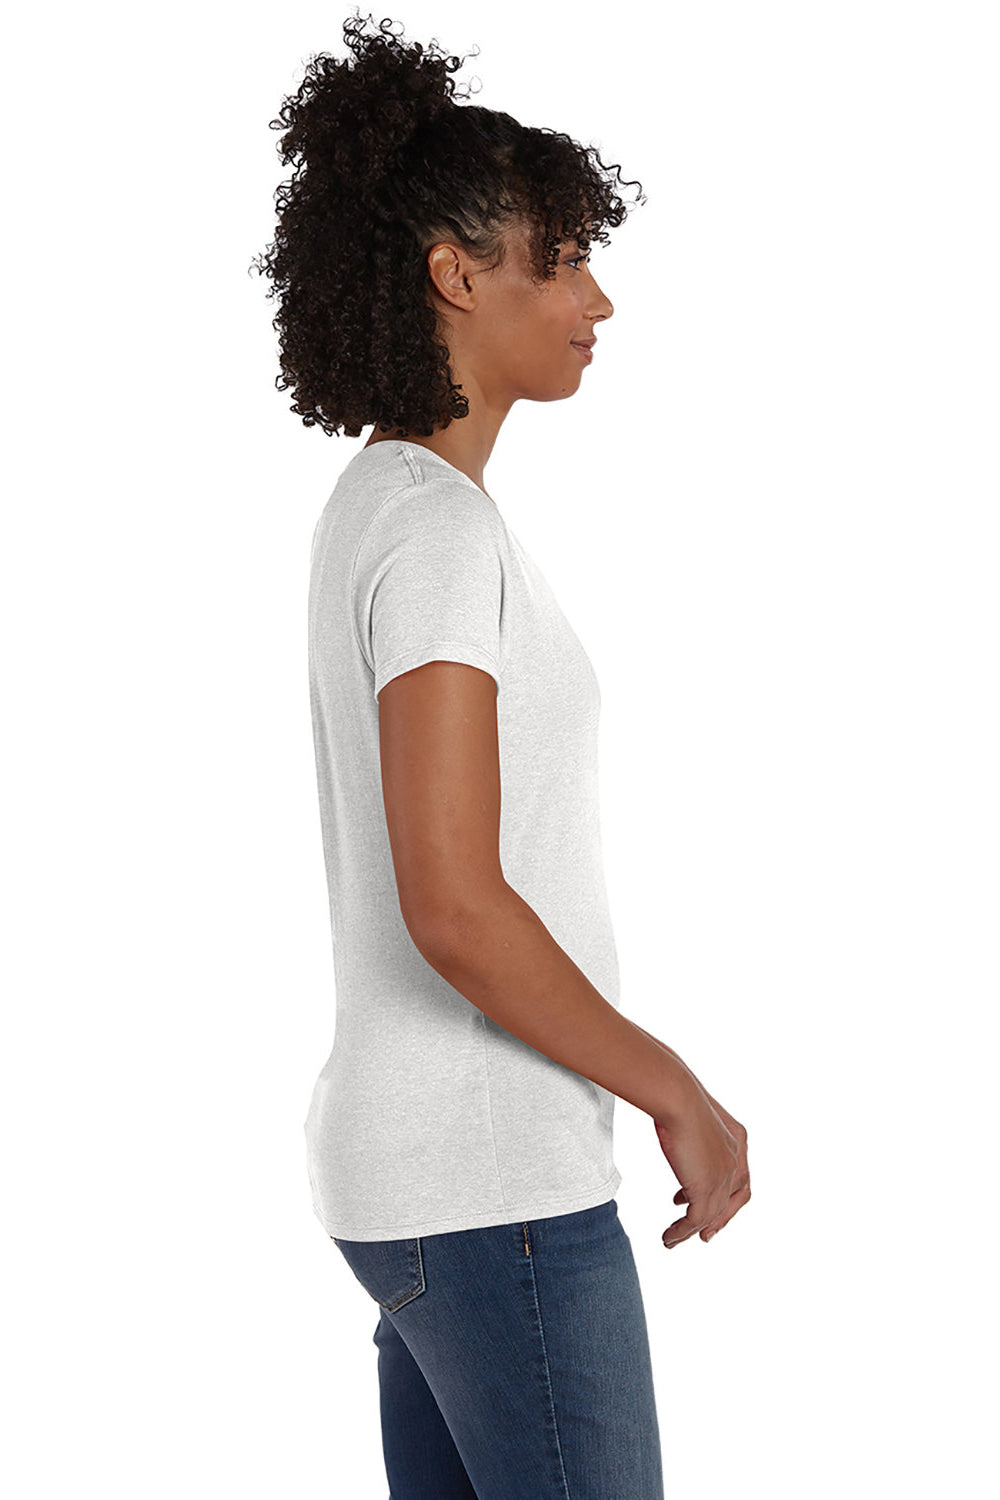 Hanes 42VT Womens X-Temp FreshIQ Moisture Wicking Short Sleeve V-Neck T-Shirt Eco White SIde